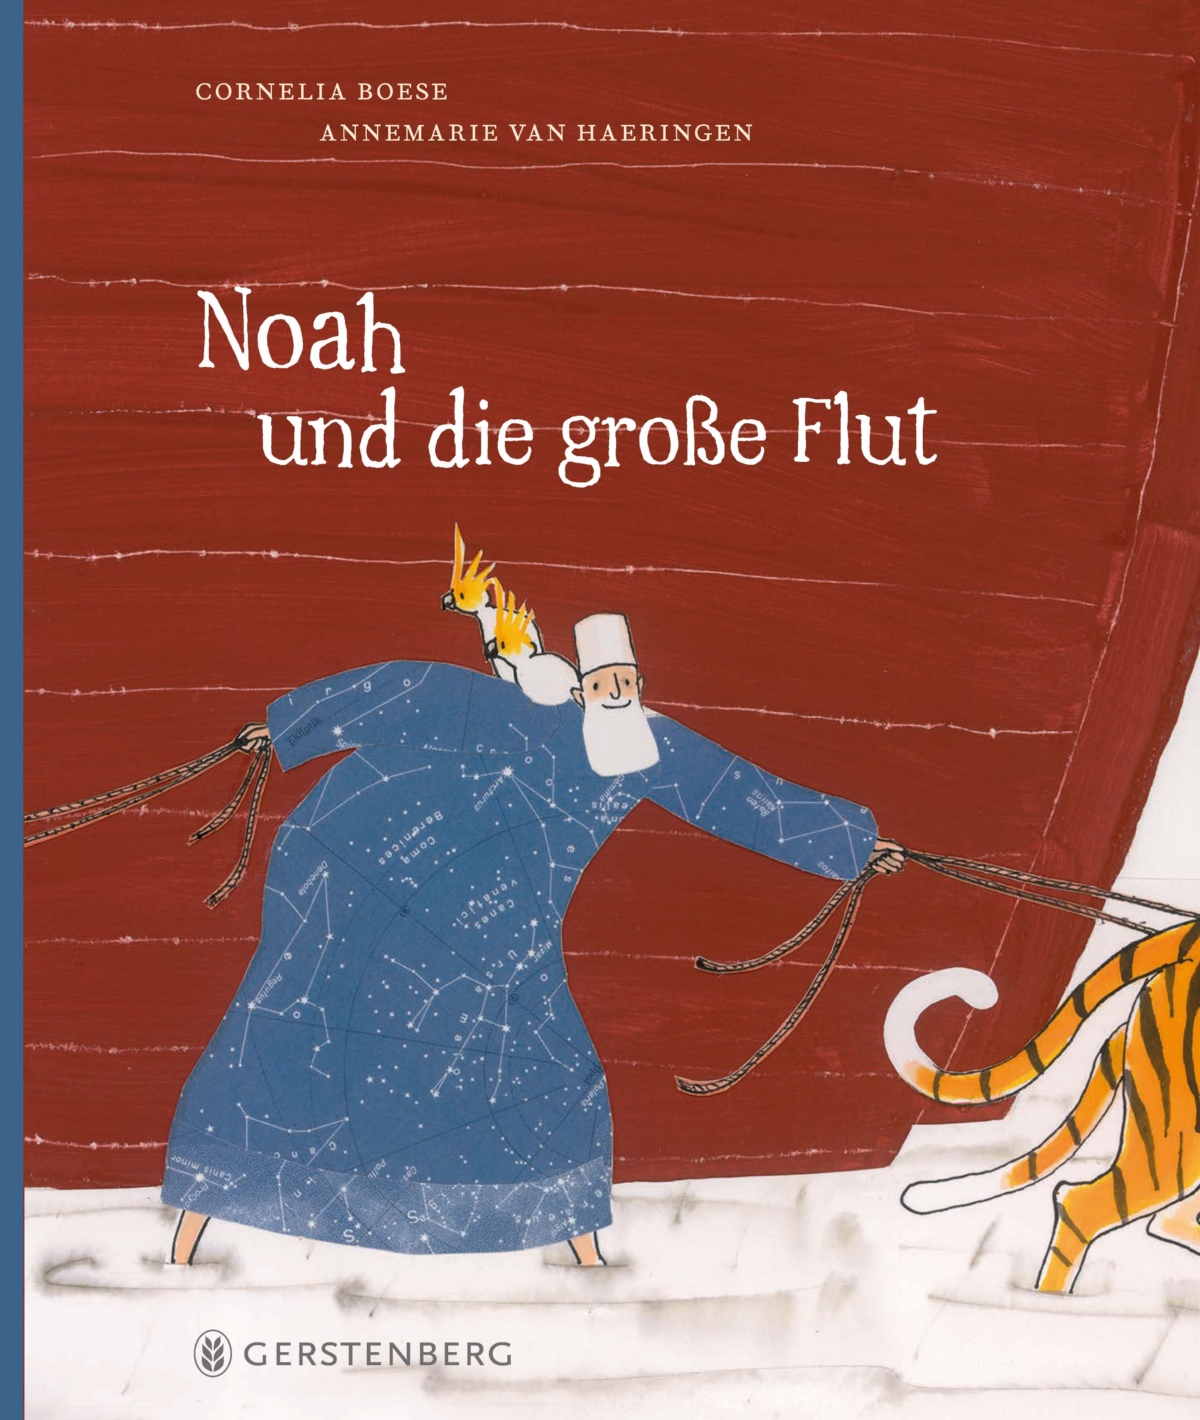 Illustration von Annemarie van Haeringen aus dem Buch „Noah und die große Flut Von Cornelia Boese und Annemarie van Haeringen